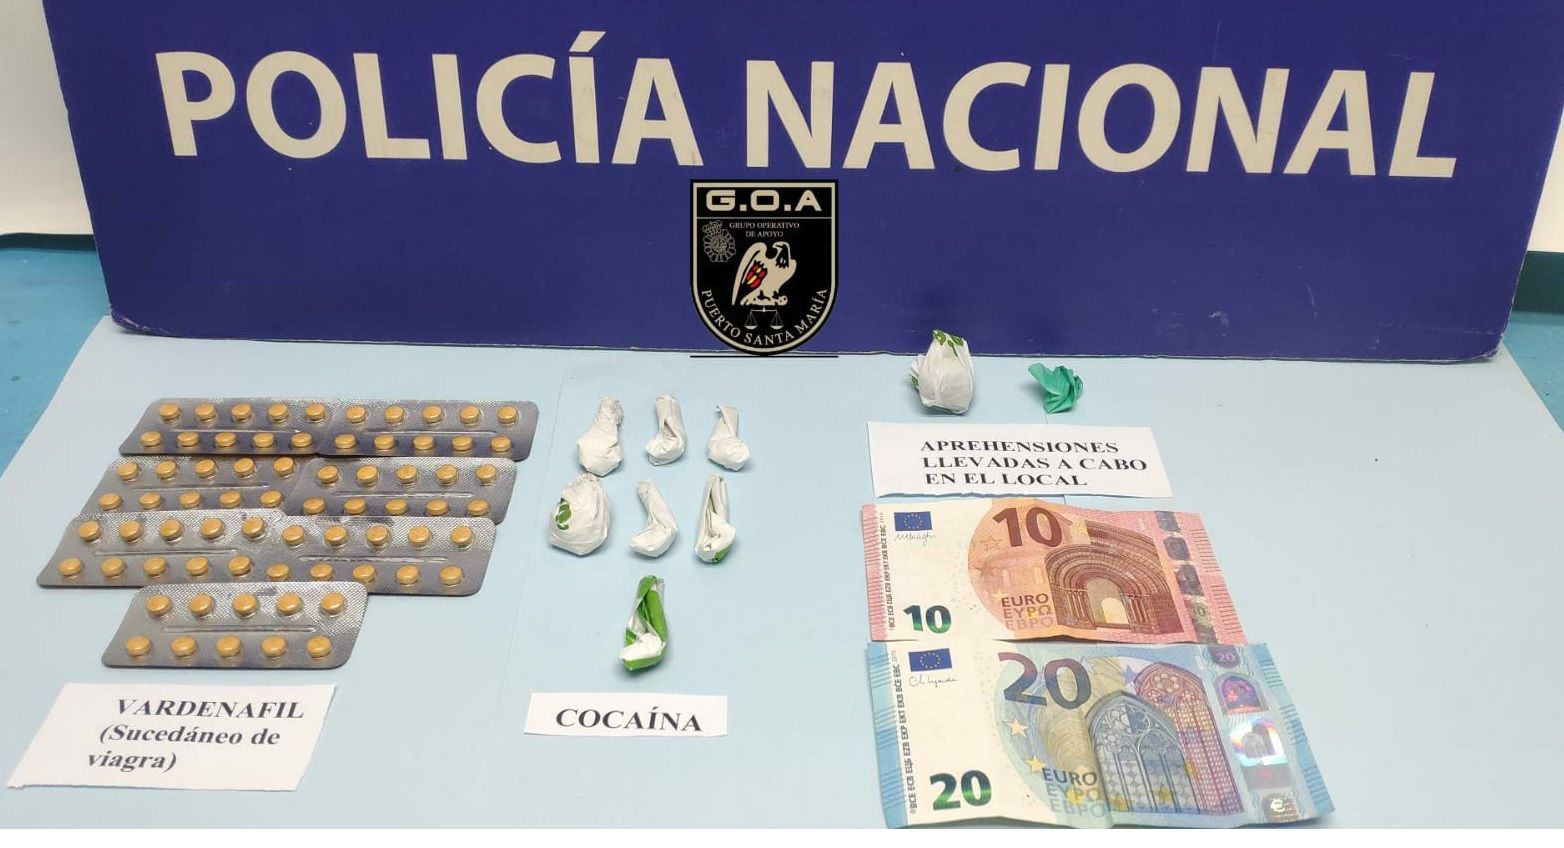 Alertan de la "alta demanda" de pastillas contra la impotencia en zonas de movida juvenil en El Puerto. Dinero, medicamentos y estupefacientes intervenidos por la Policía Nacional en El Puerto.